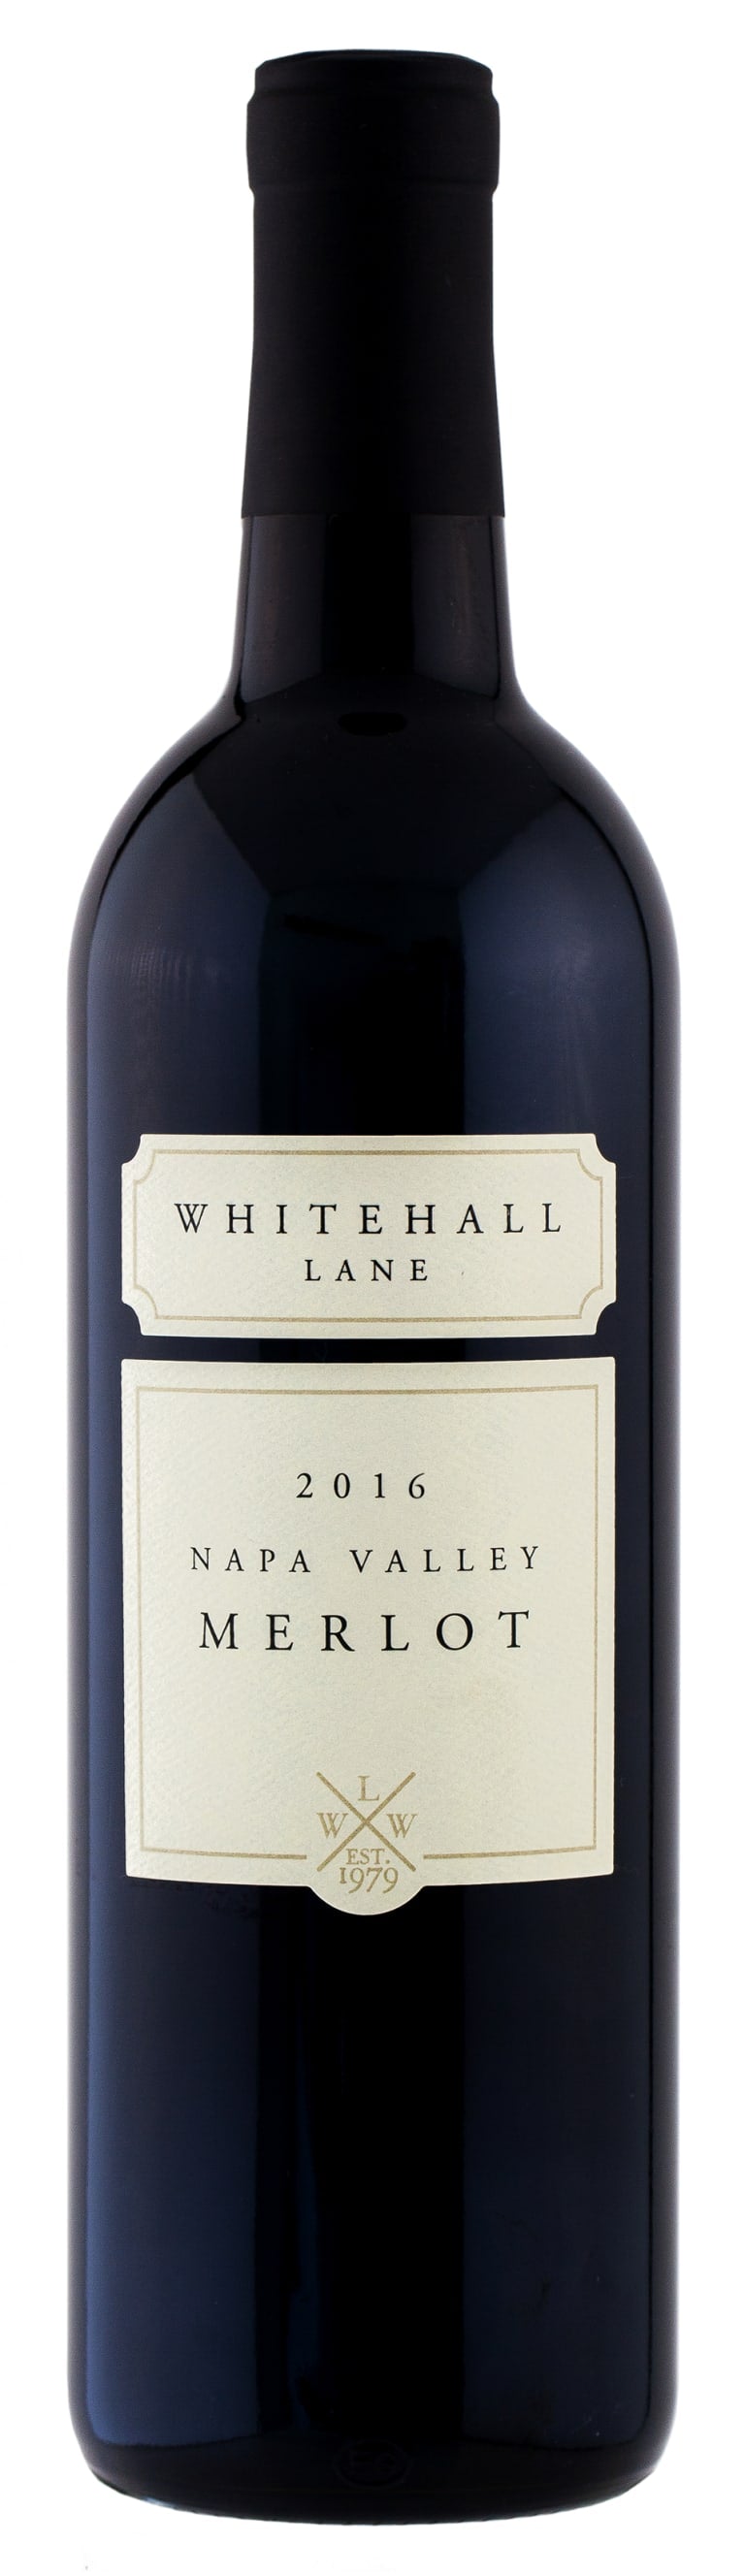 Whitehall Lane Merlot 2016